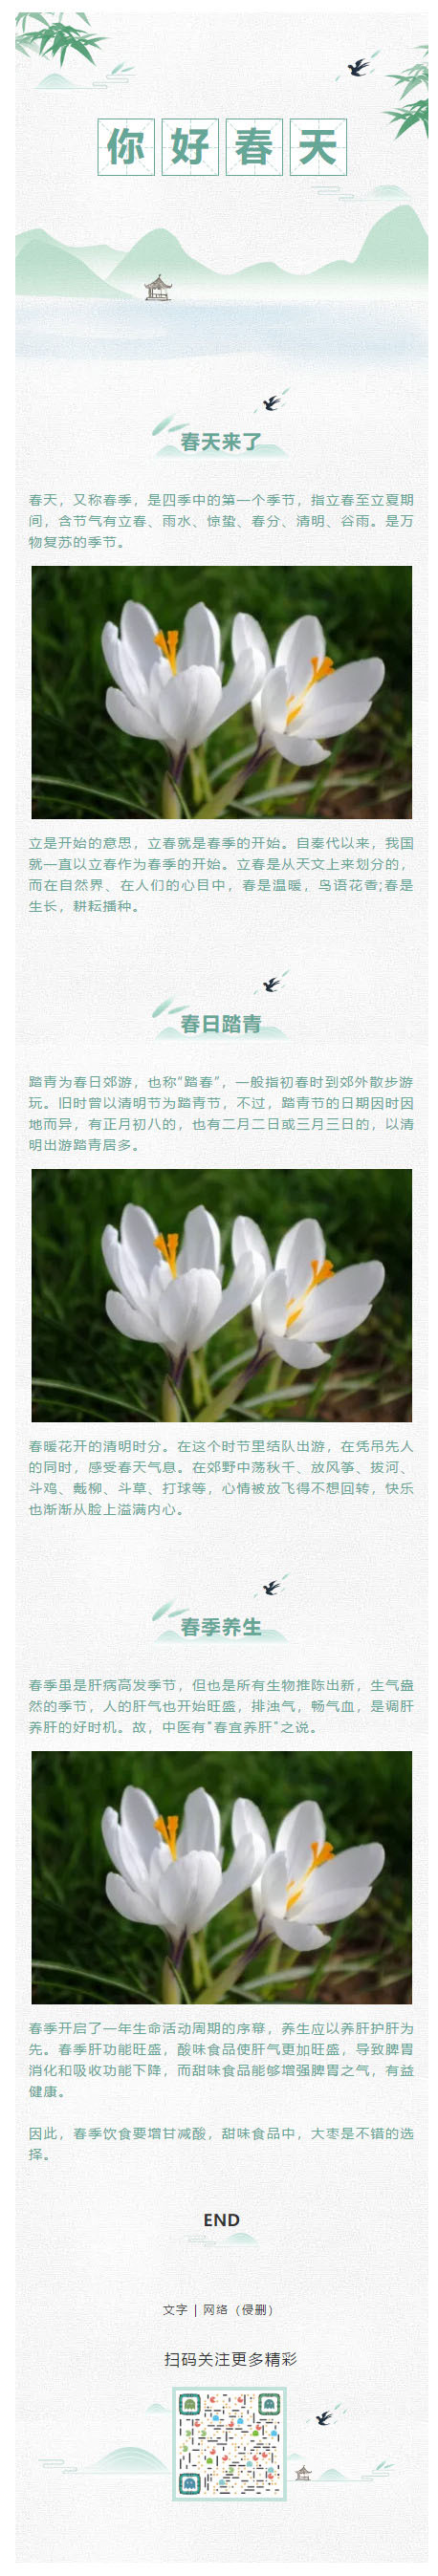 春天来了绿色清新风格微信公众号推送图文素材背景图片水墨风格中国风